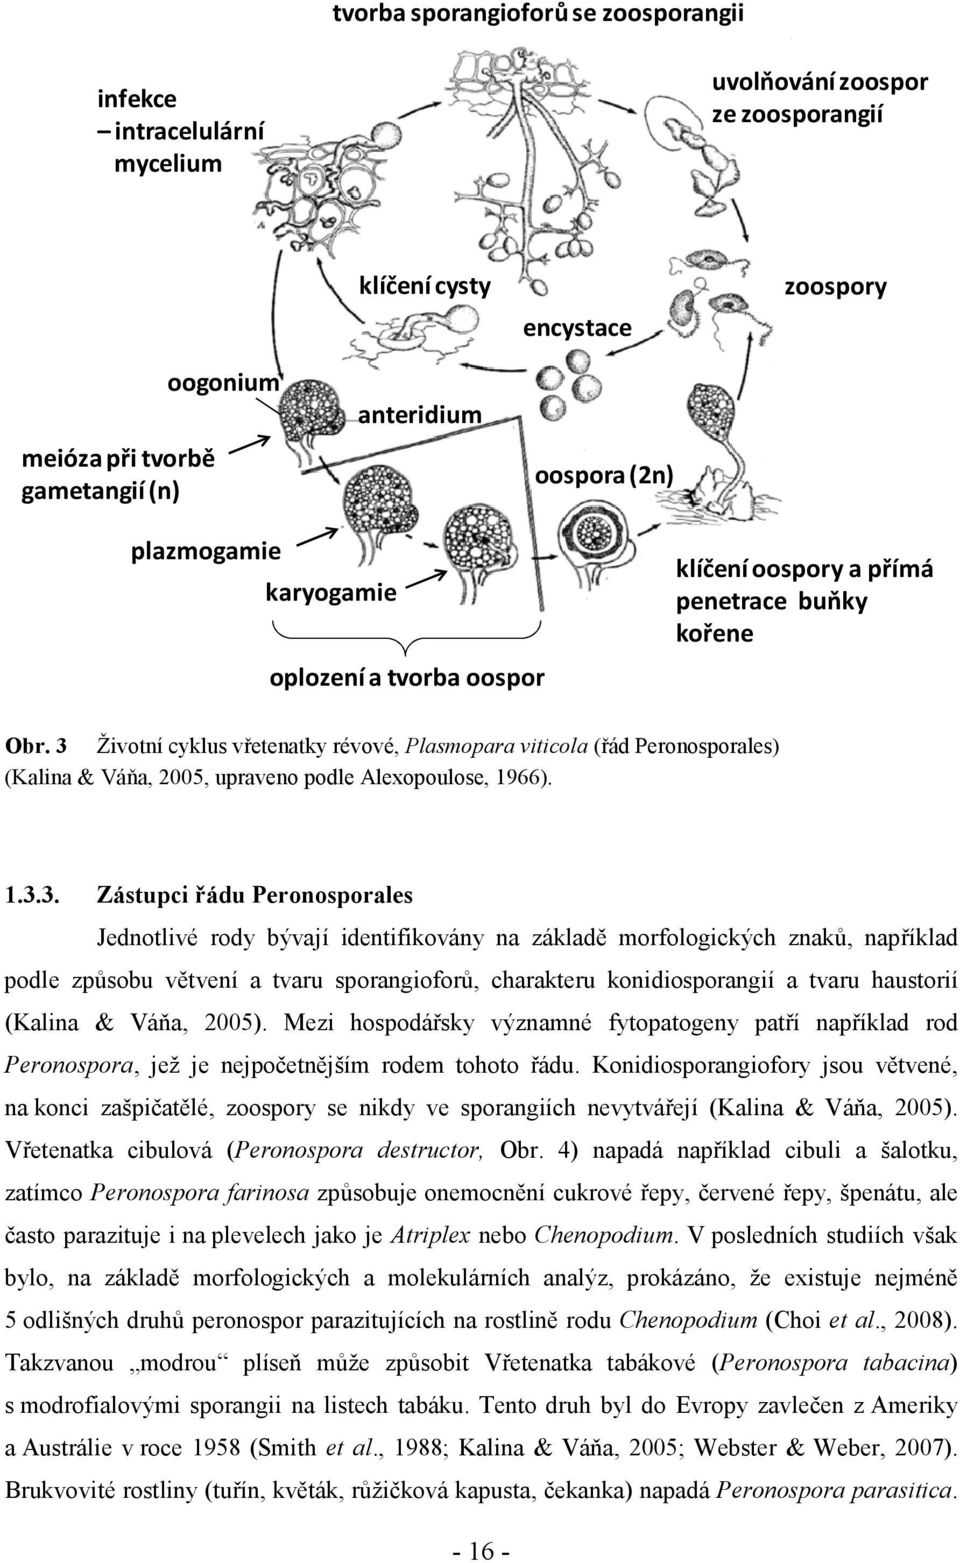 3 Životní cyklus vřetenatky révové, Plasmopara viticola (řád Peronosporales) (Kalina & Váňa, 2005, upraveno podle Alexopoulose, 1966). 1.3.3. Zástupci řádu Peronosporales Jednotlivé rody bývají